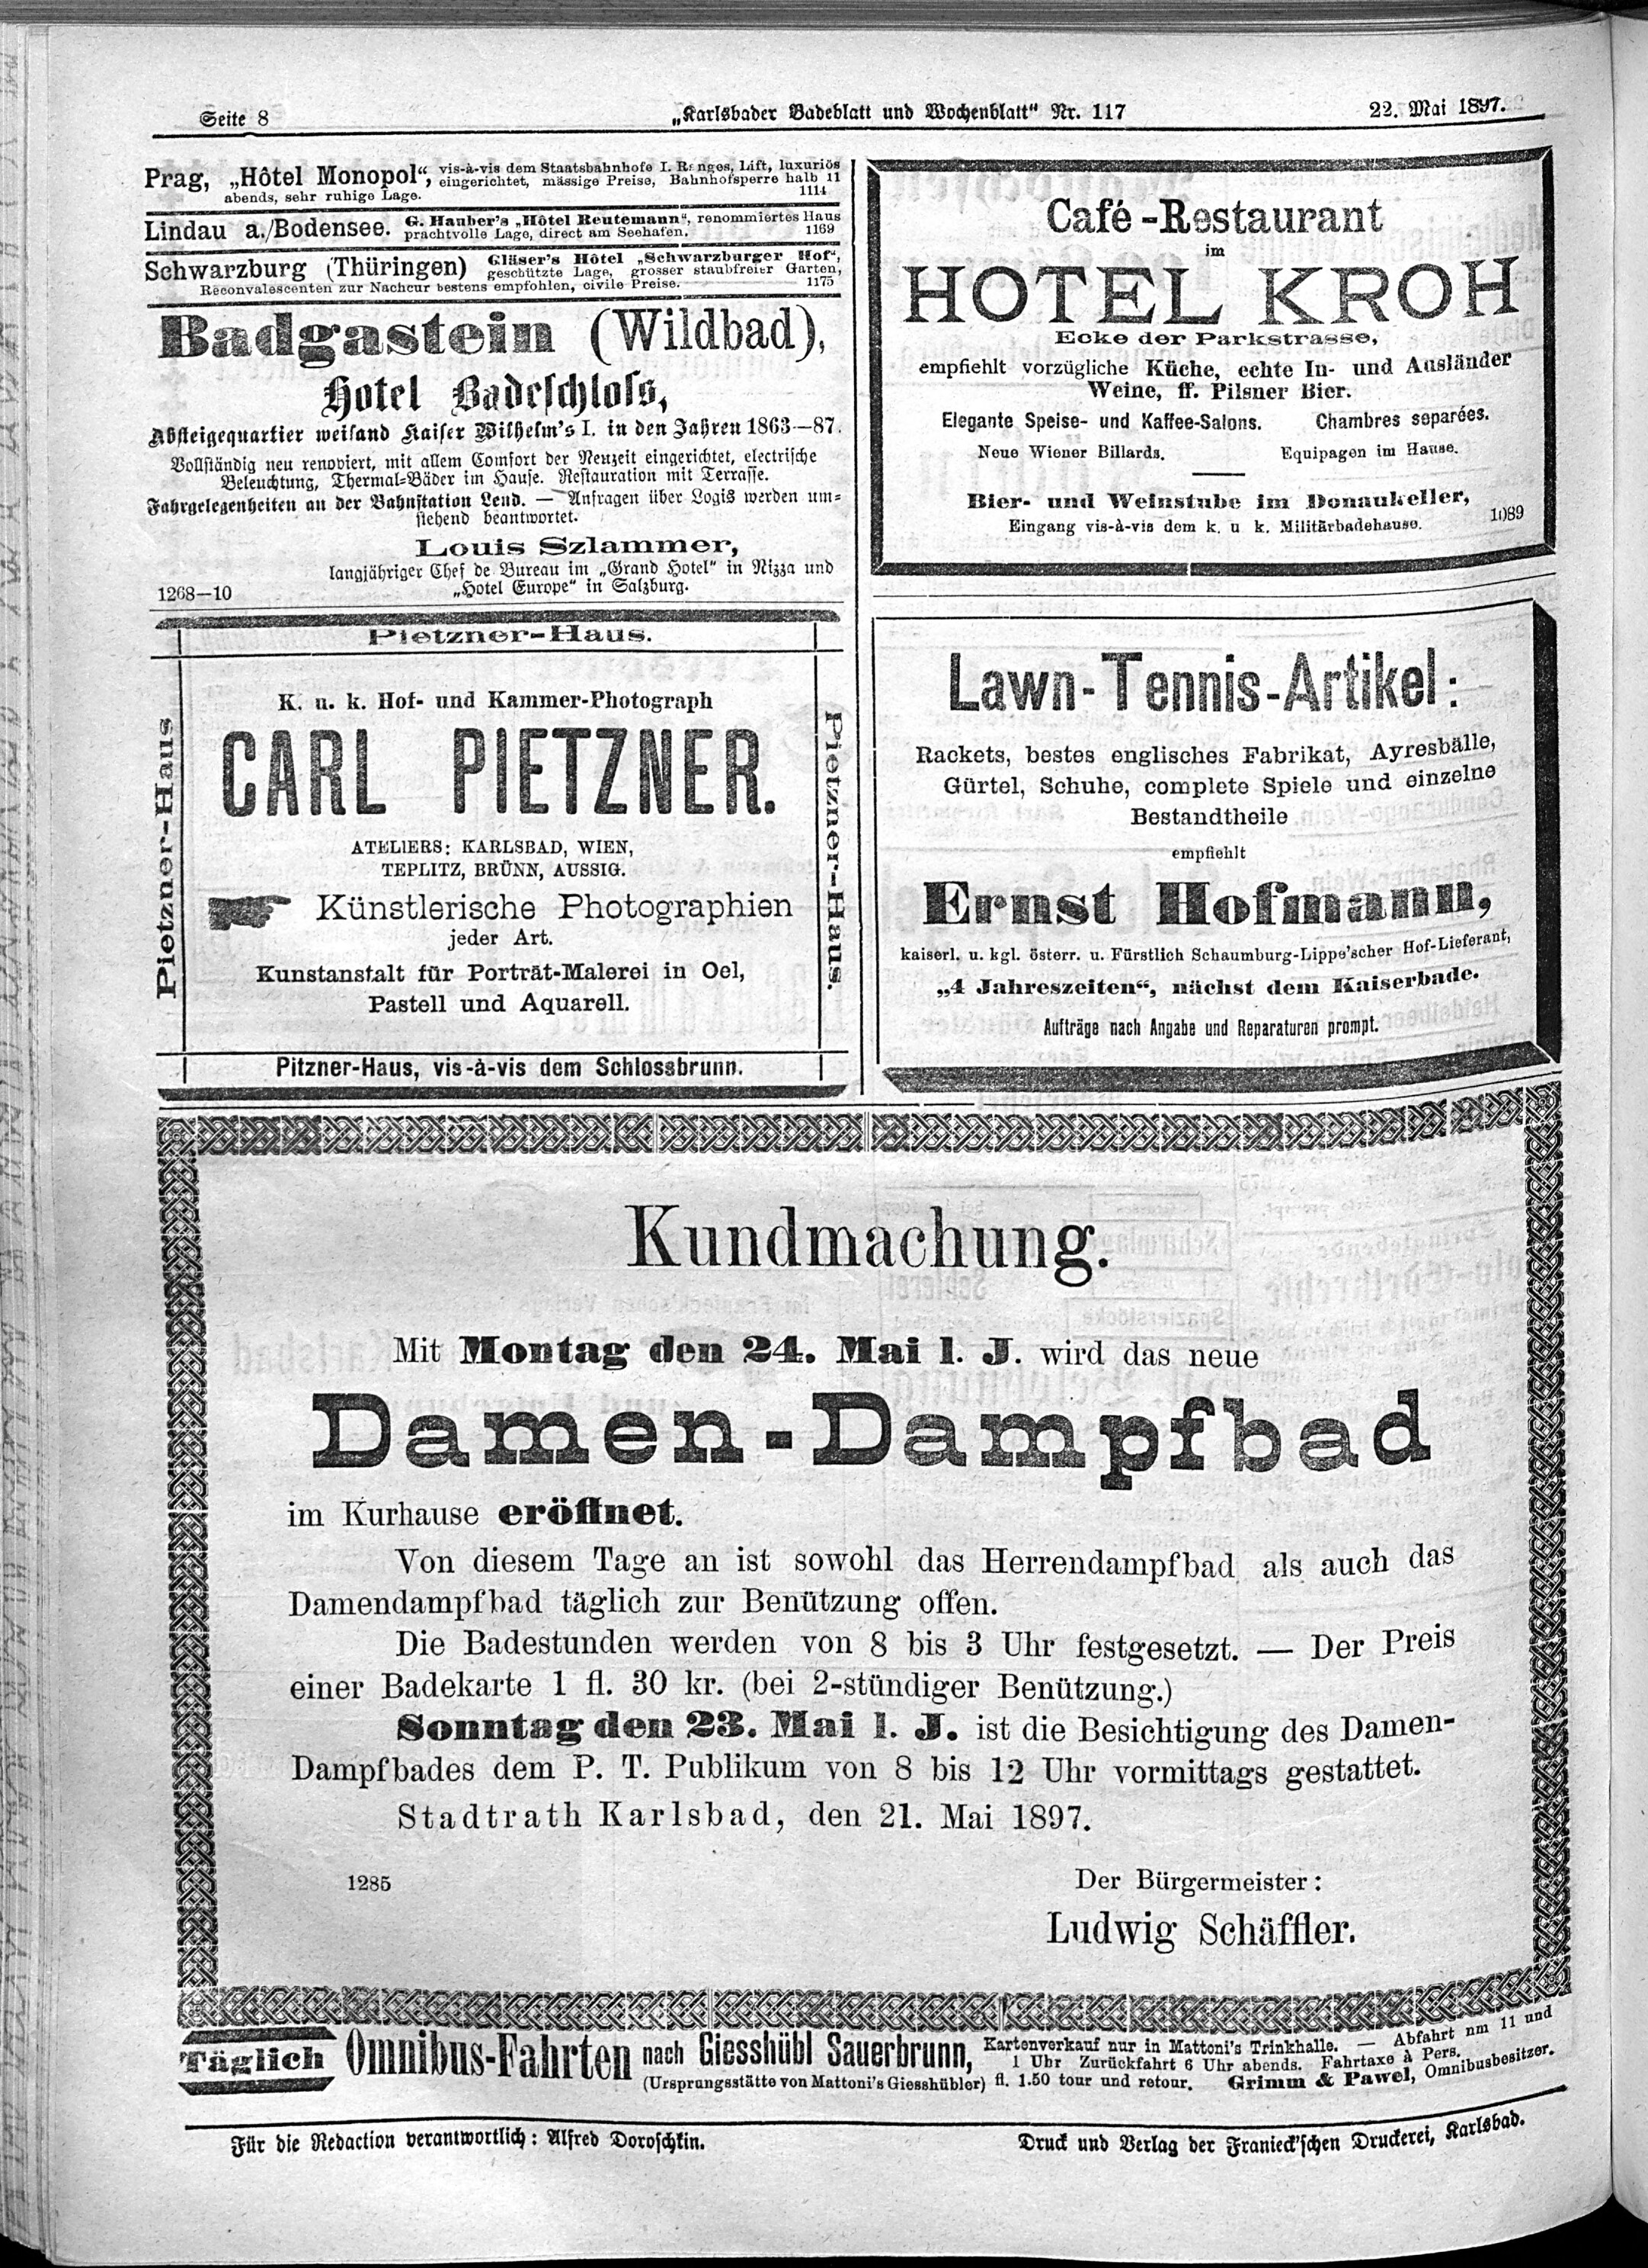 8. karlsbader-badeblatt-1897-05-22-n117_5420